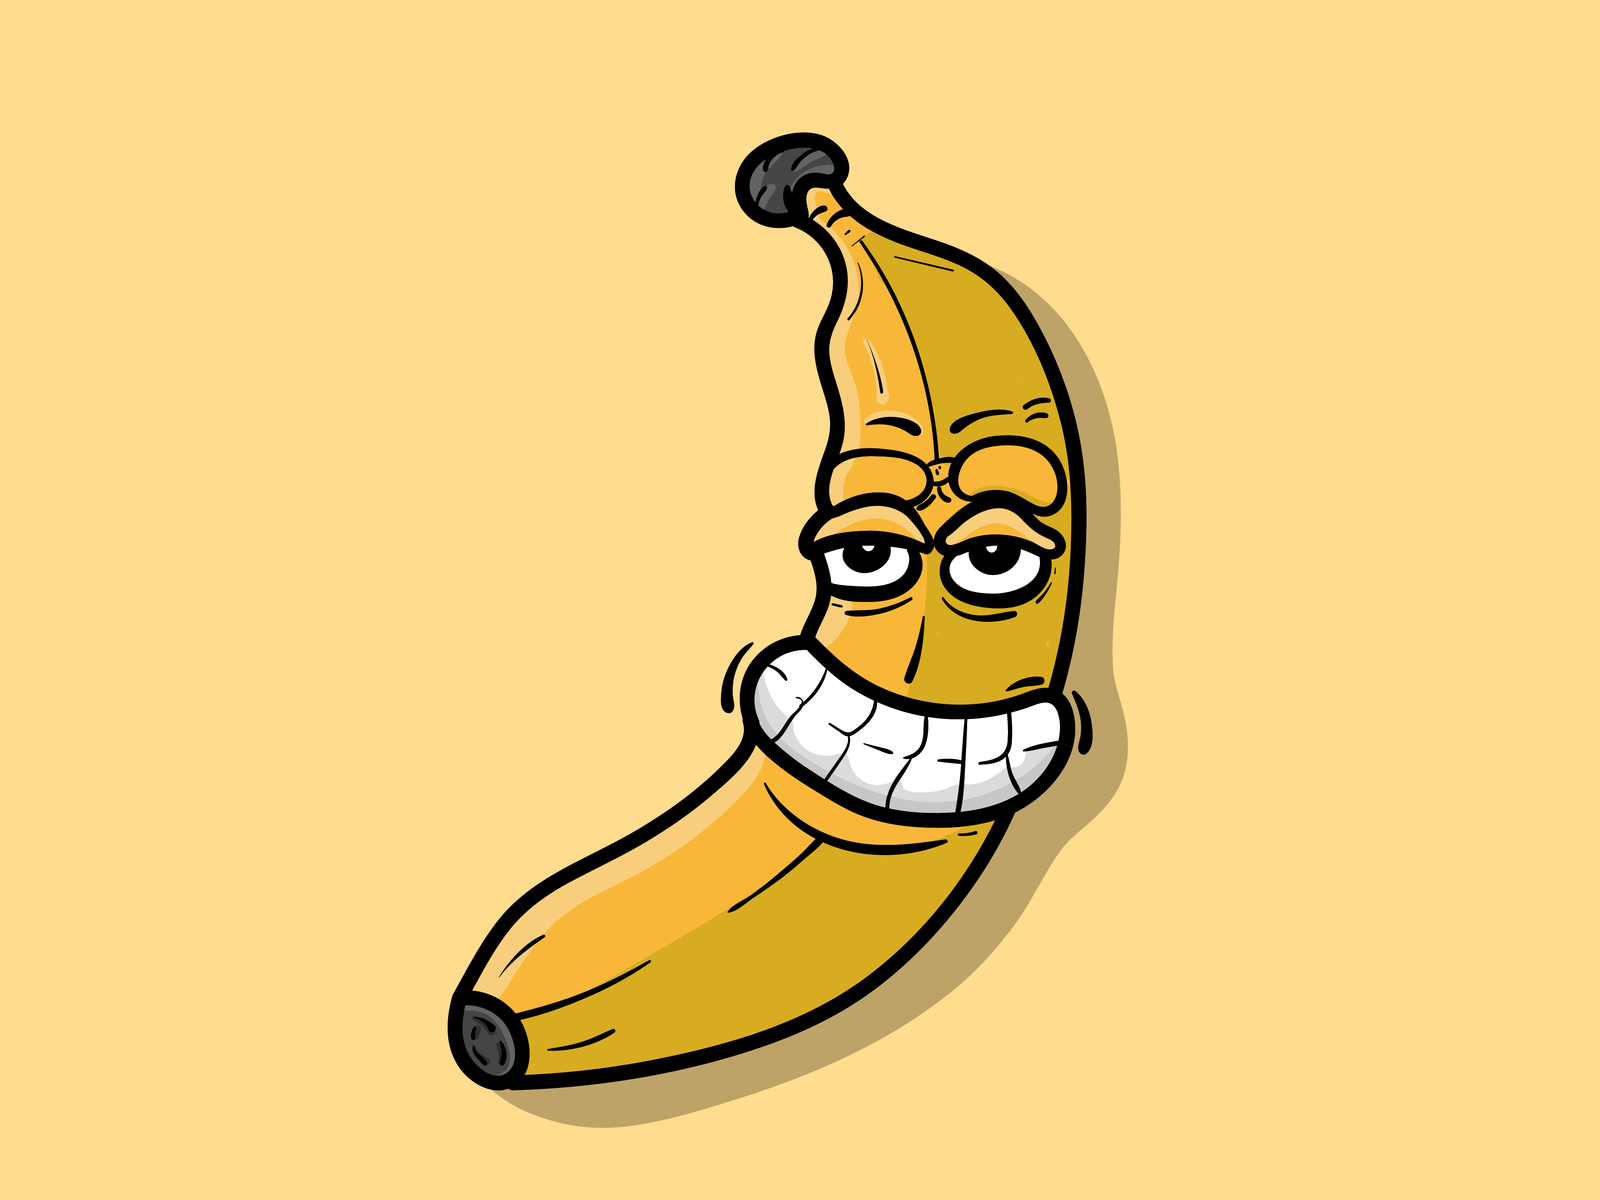 Banana Cartoon Character by Happy Sunday on Dribbble